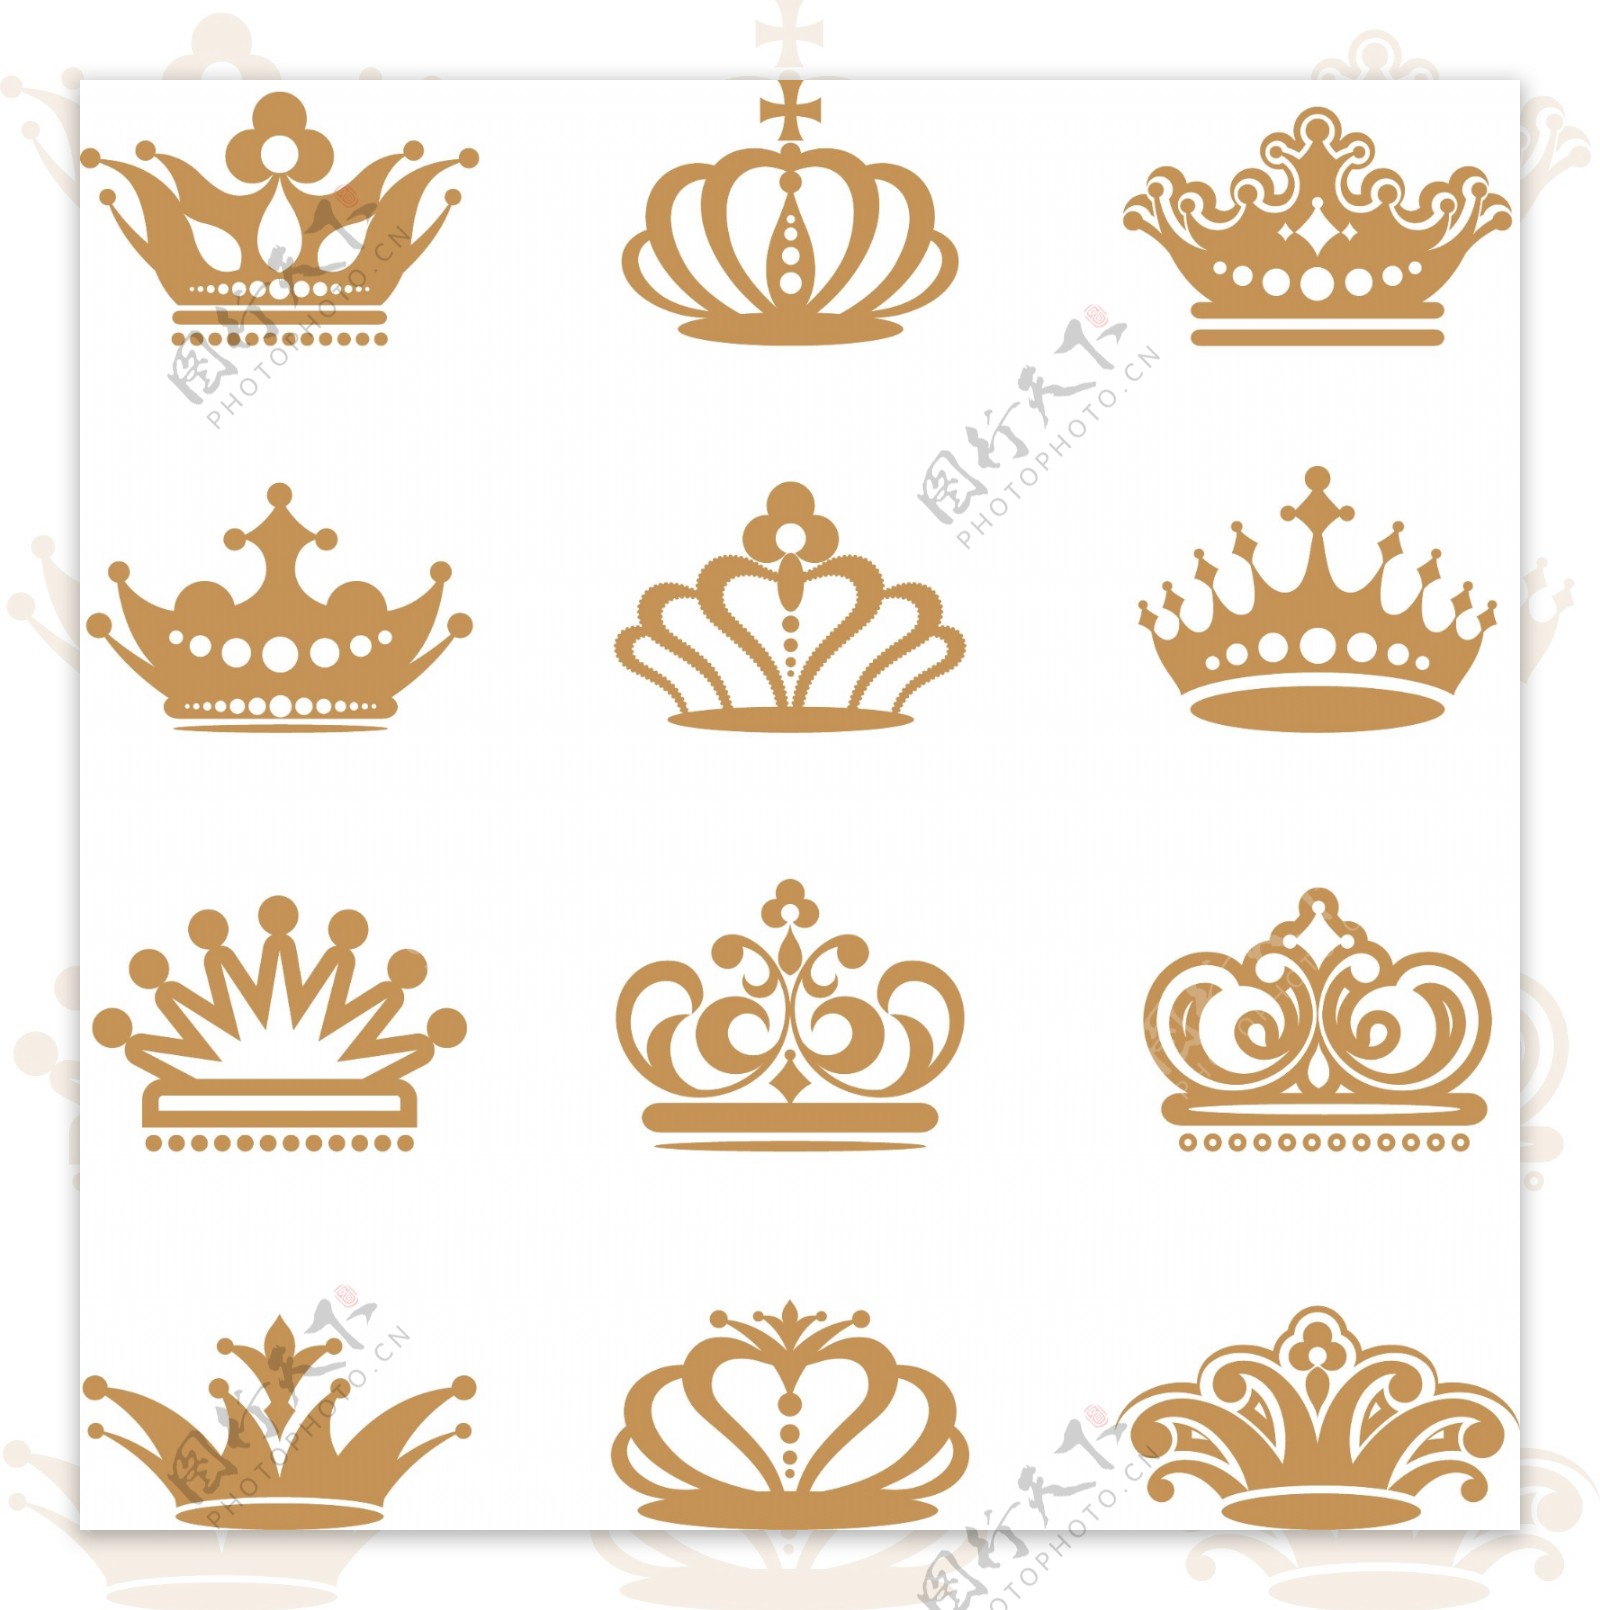 贵族皇冠王冠矢量图